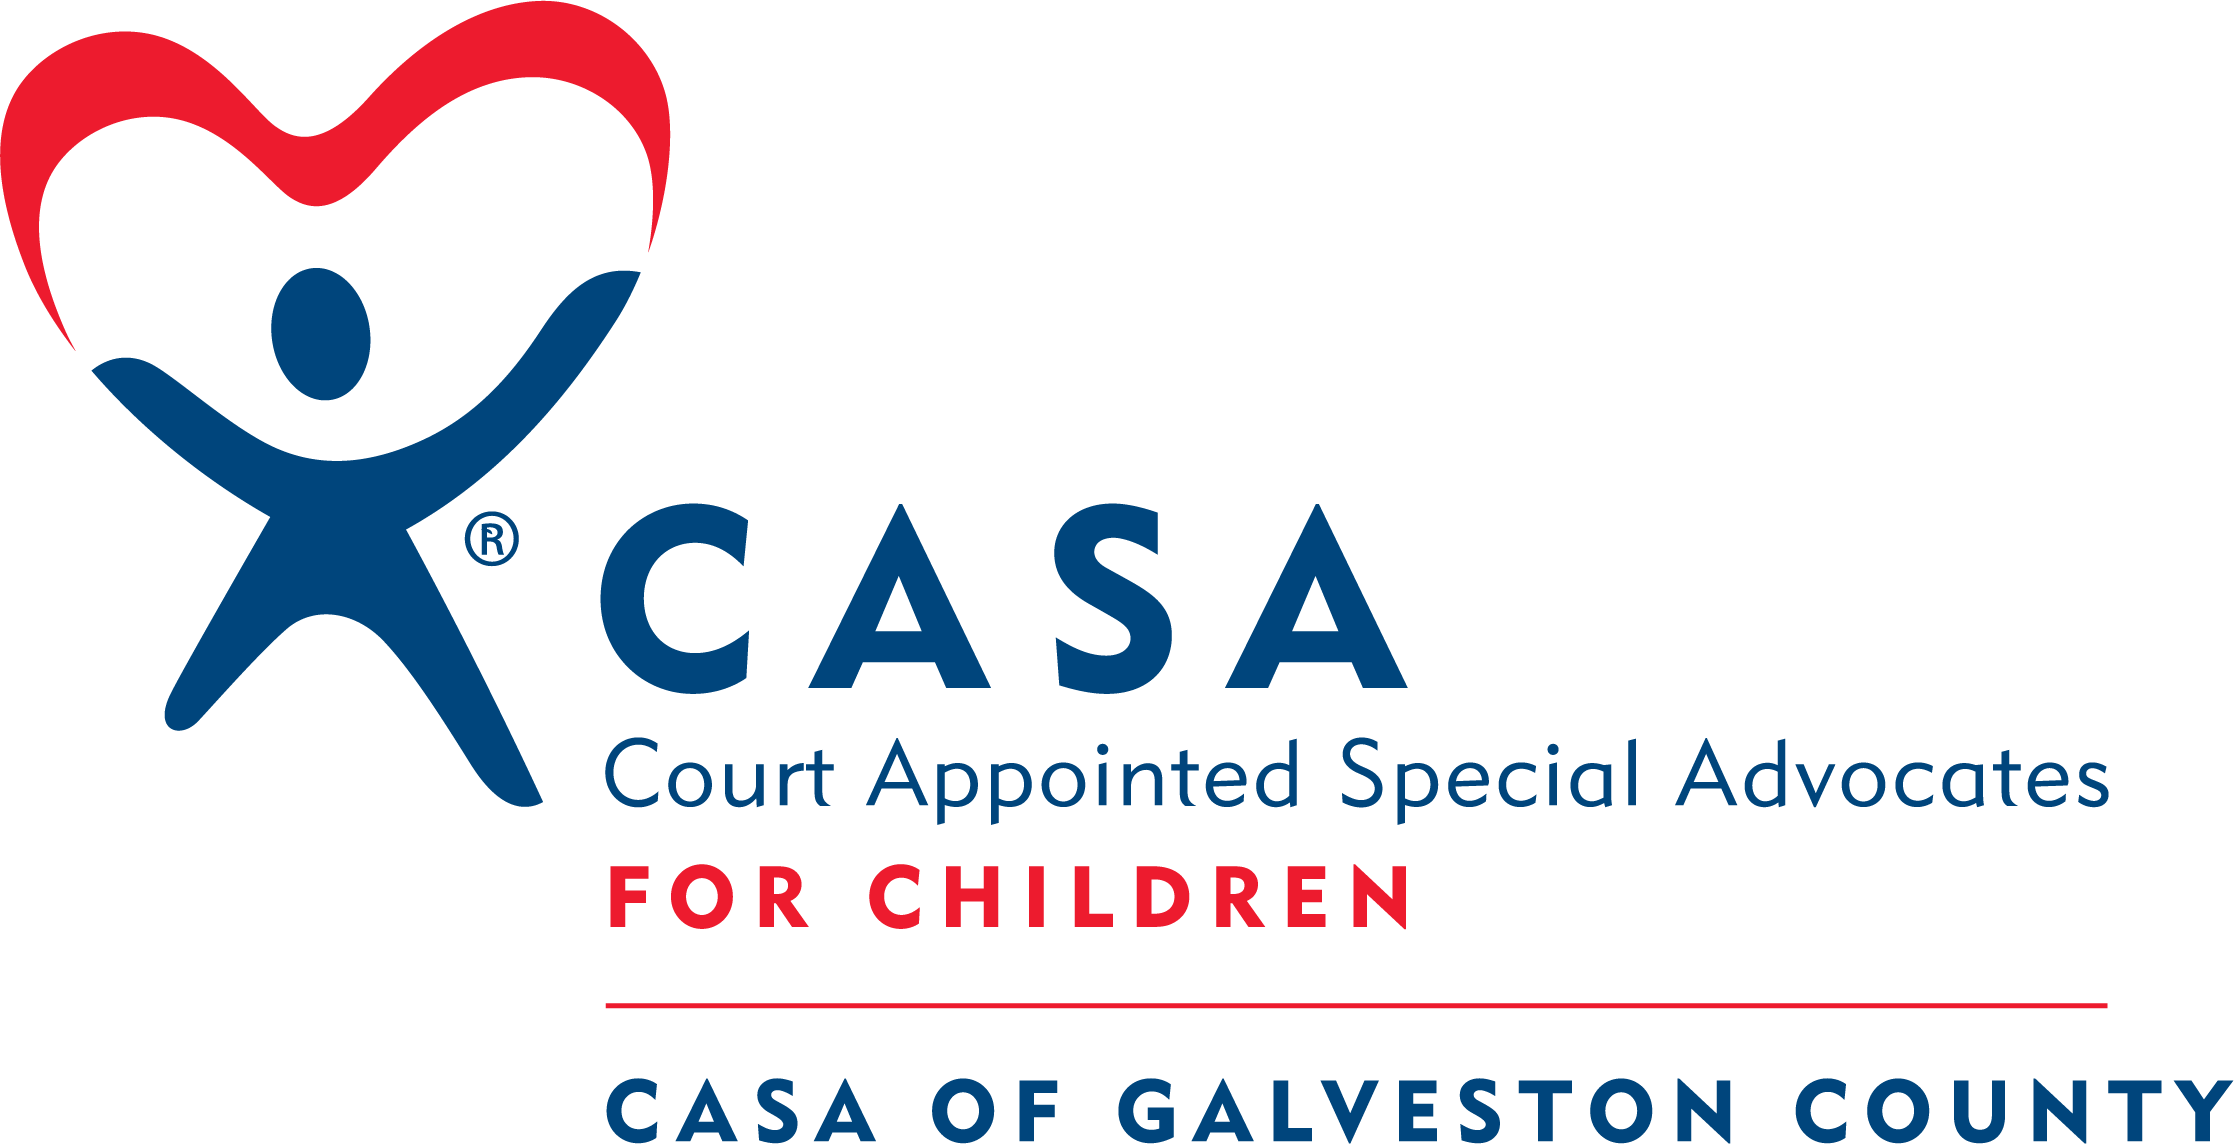 CASA of Galveston County